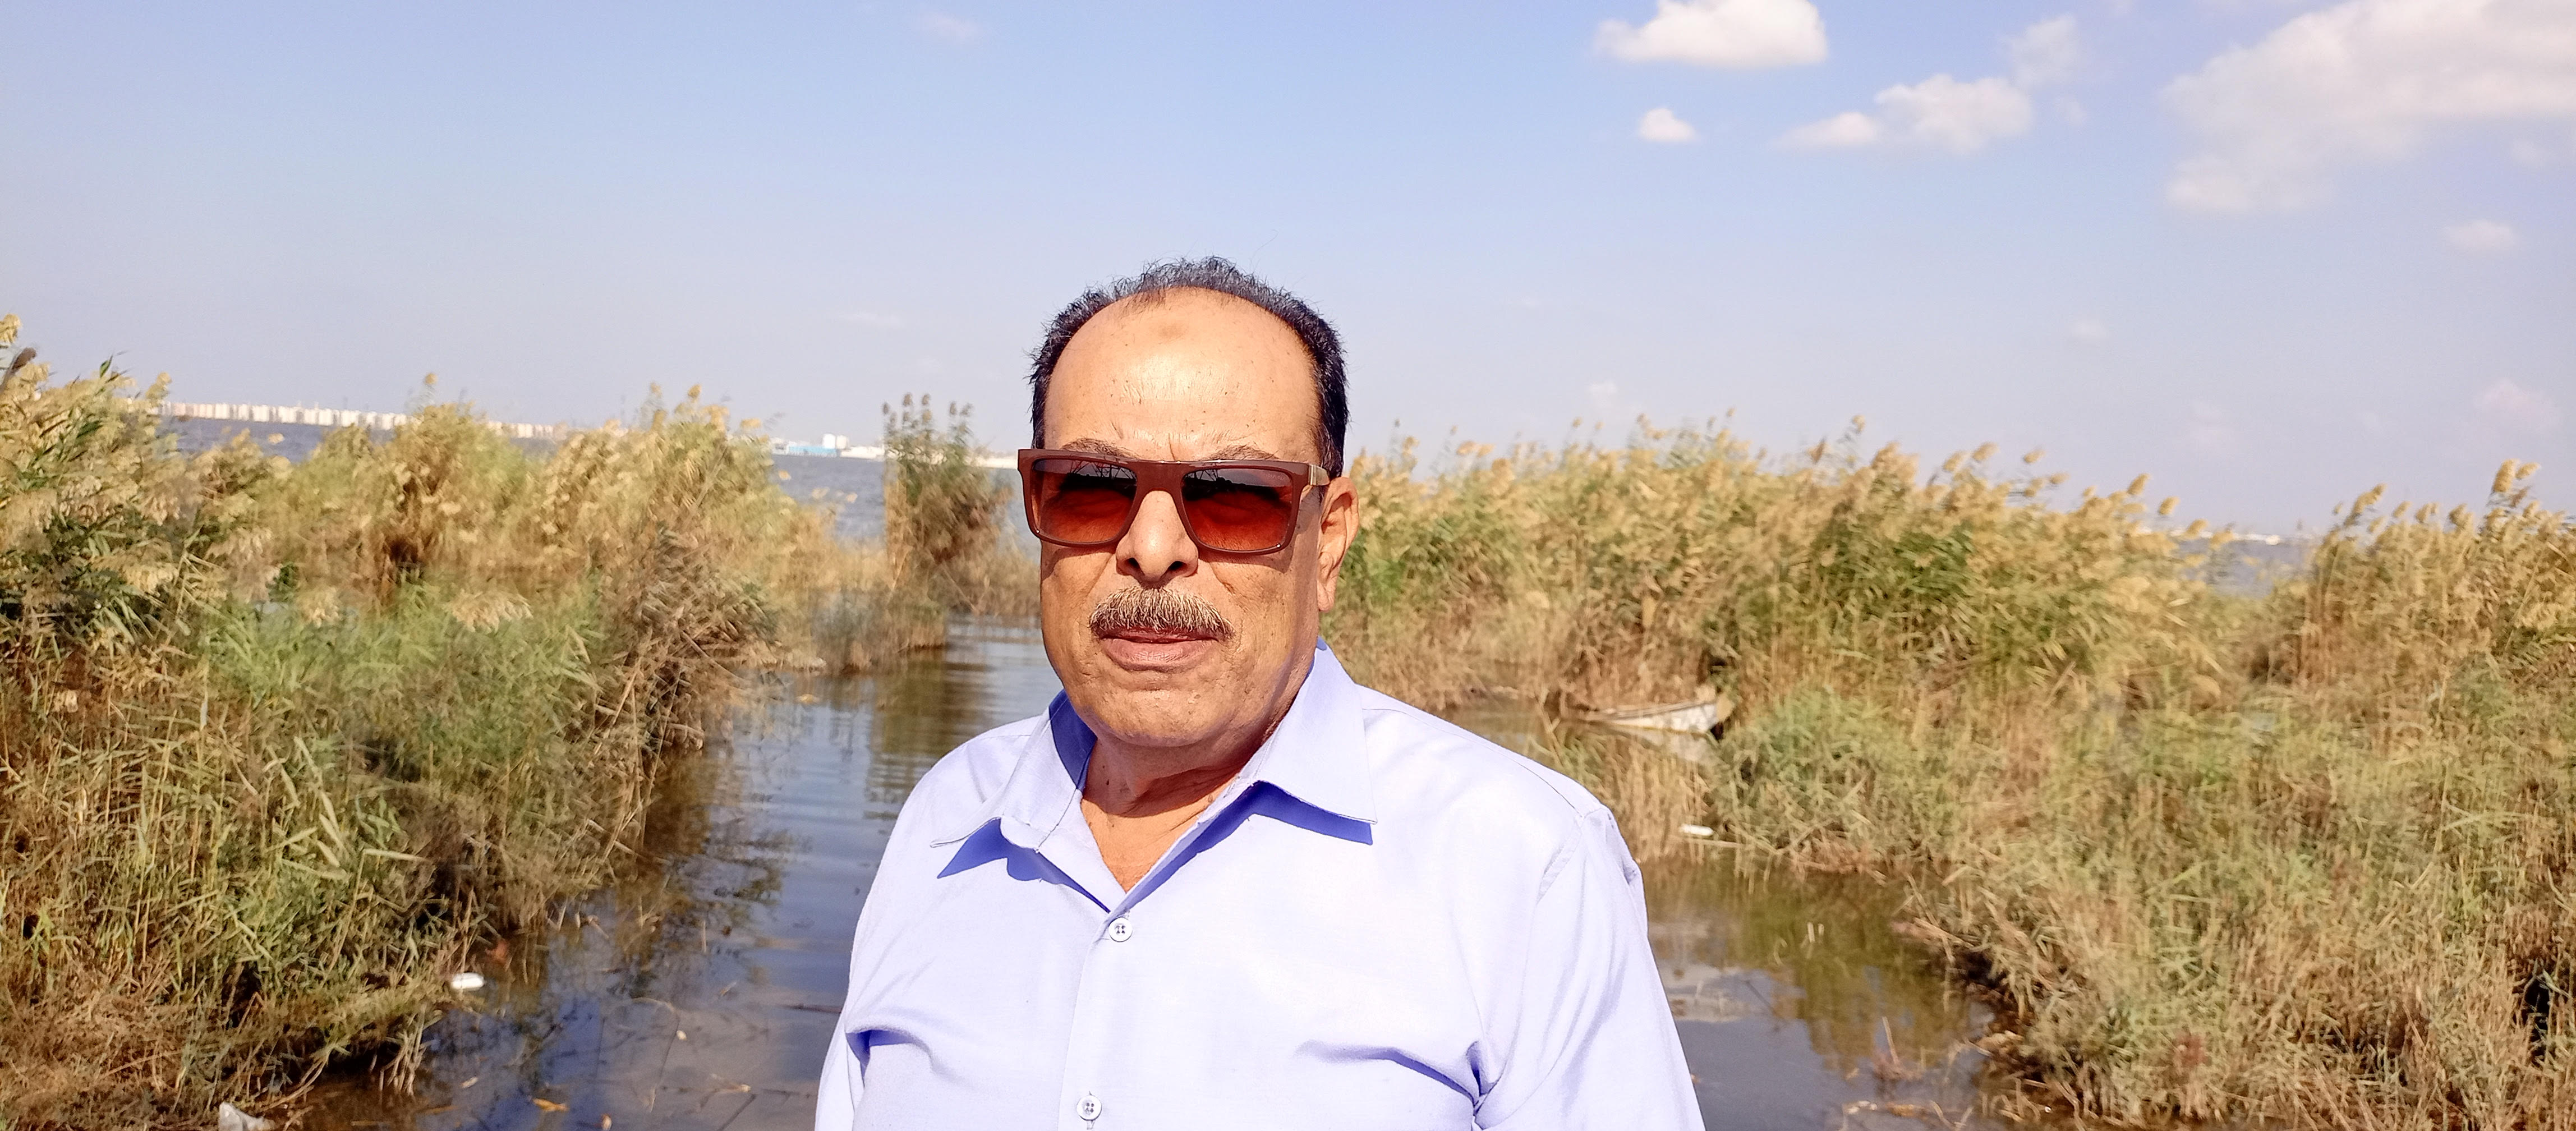 المهندس مجدى زاهر المدير التنفيذى لبحيرة المنزلة بالقطاعات الثلاث دمياط وبورسعيد والدقهلية